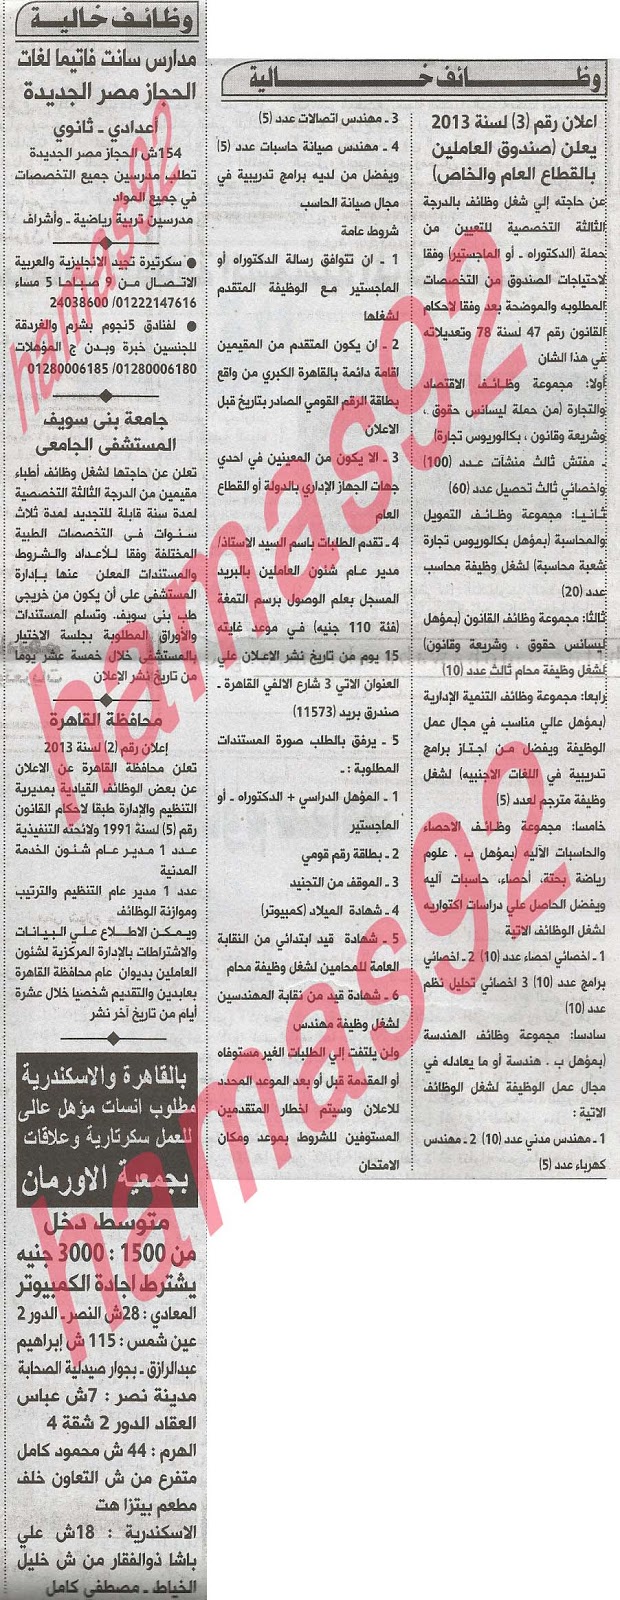 وظائف خالية فى مصر اليوم من الصحف والجرائد الاهرام والاخبار والجمهورية اليوم الاحد 2/6/2013 %D8%A7%D9%84%D8%A7%D9%87%D8%B1%D8%A7%D9%85+1